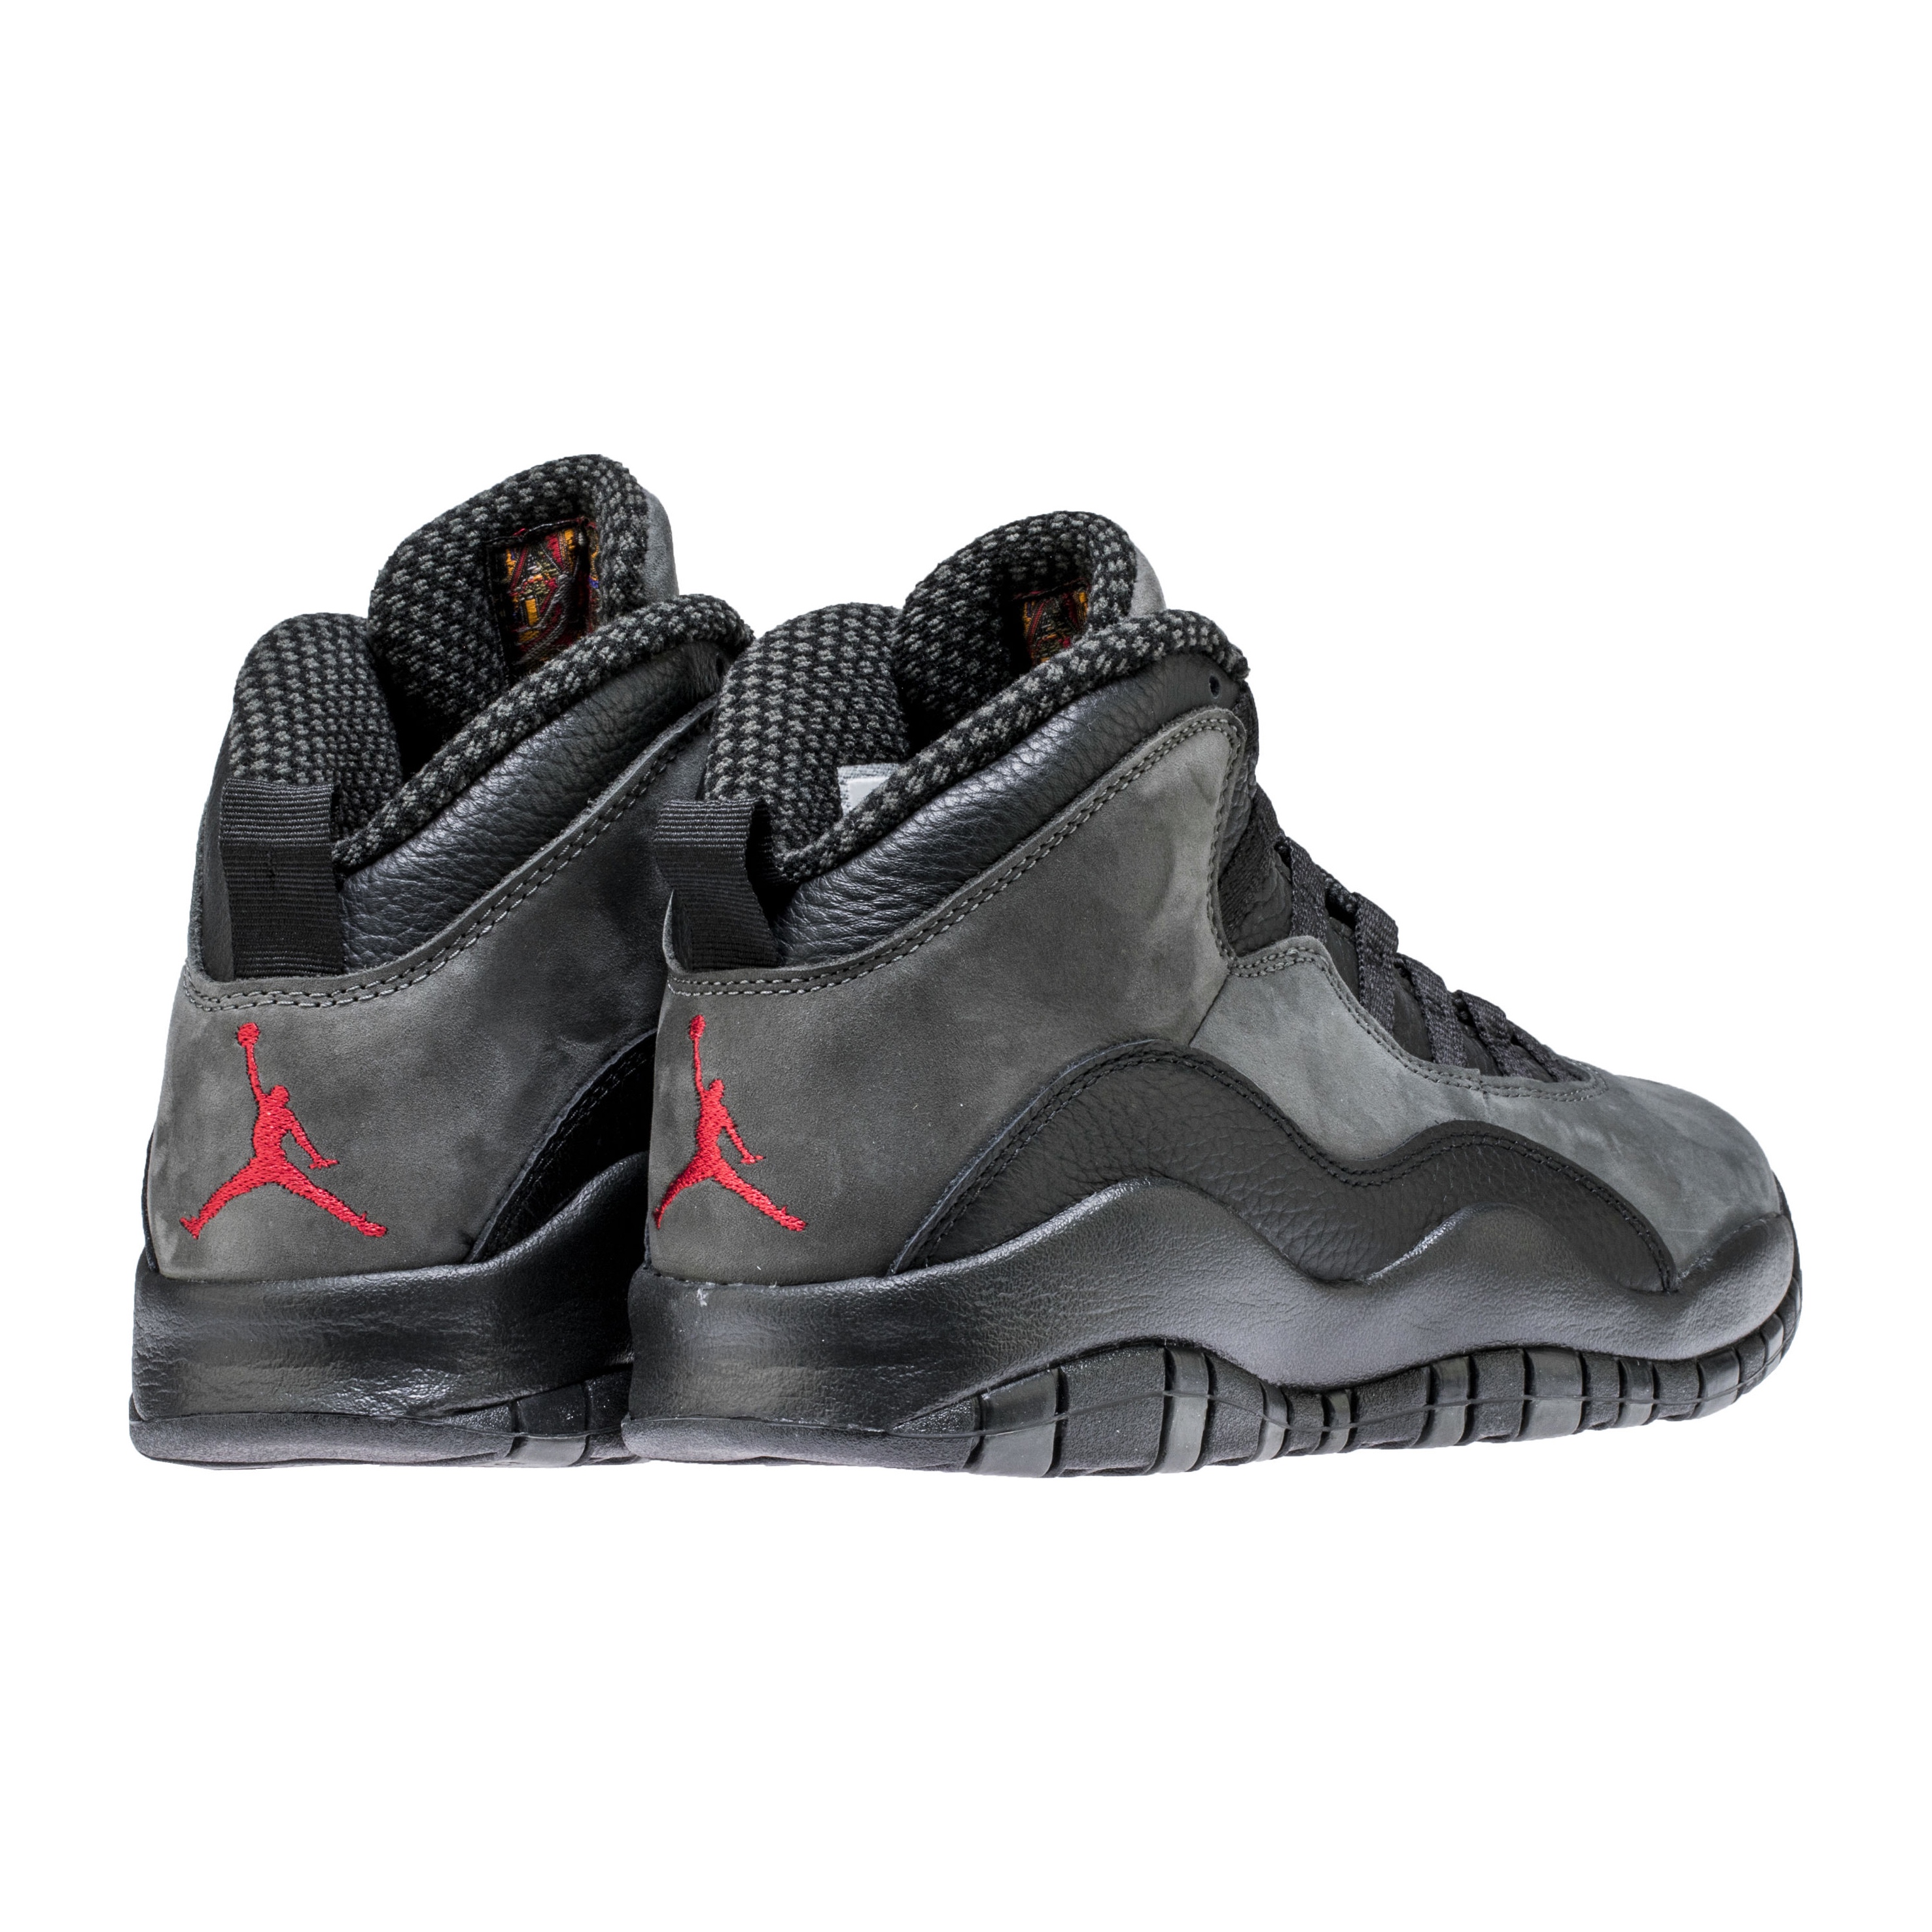 Release Reminder: The Air Jordan 10 